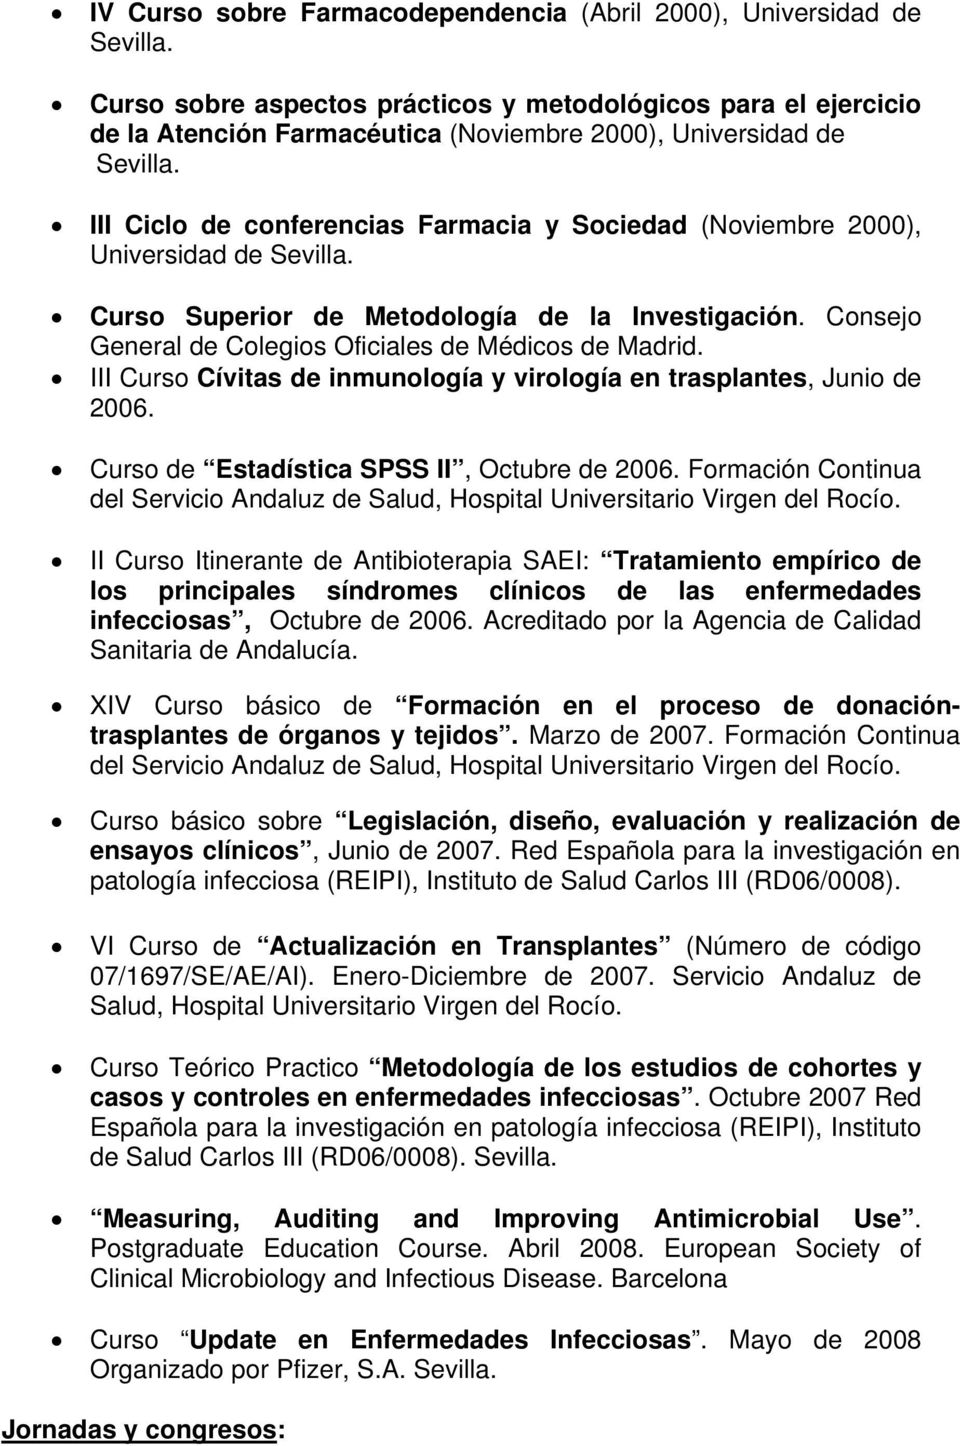 III Ciclo de conferencias Farmacia y Sociedad (Noviembre 2000), Universidad de Sevilla. Curso Superior de Metodología de la Investigación. Consejo General de Colegios Oficiales de Médicos de Madrid.